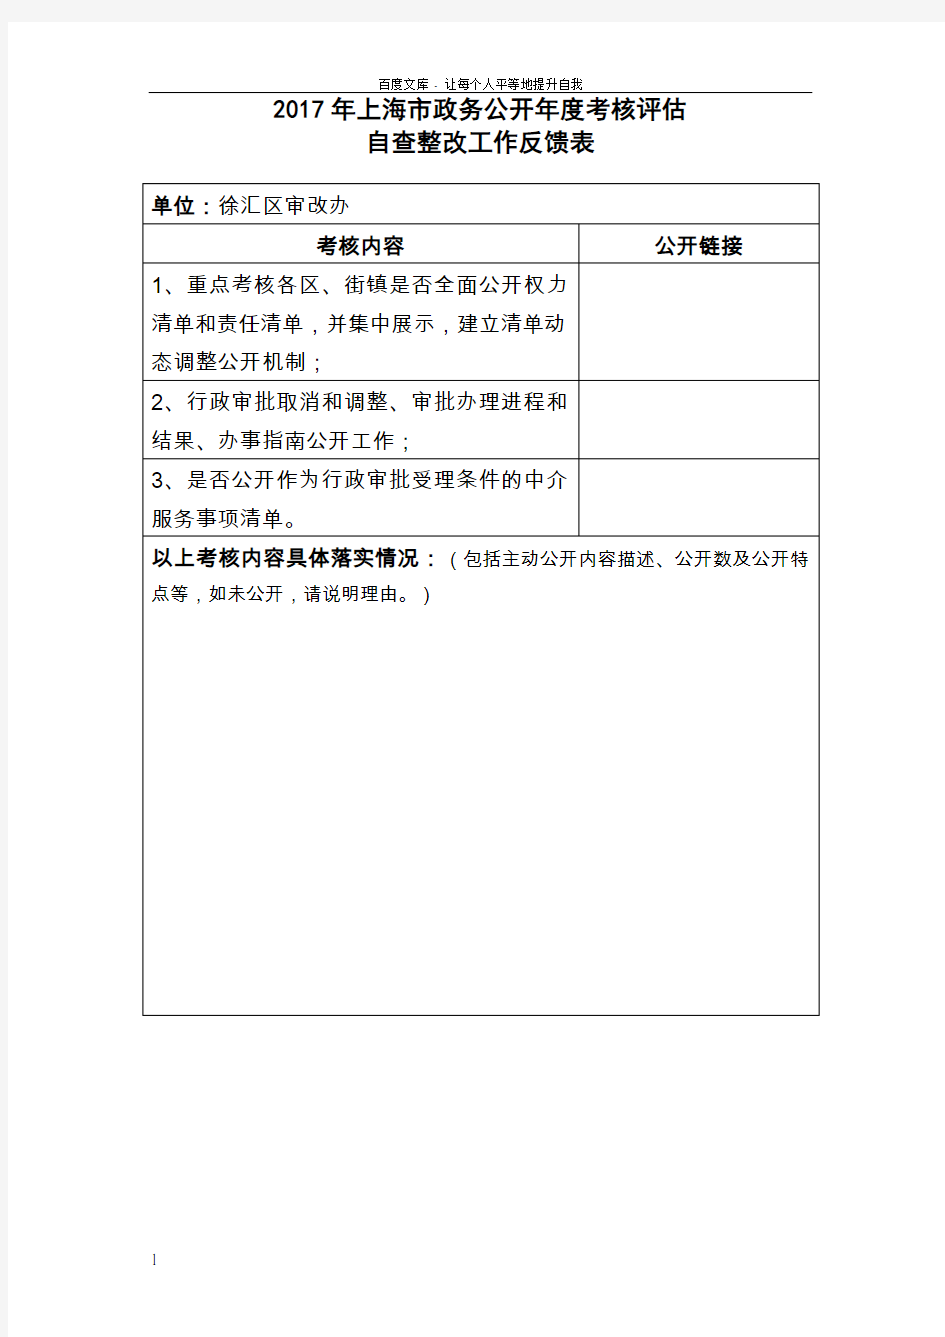 2017年上海政务公开考核